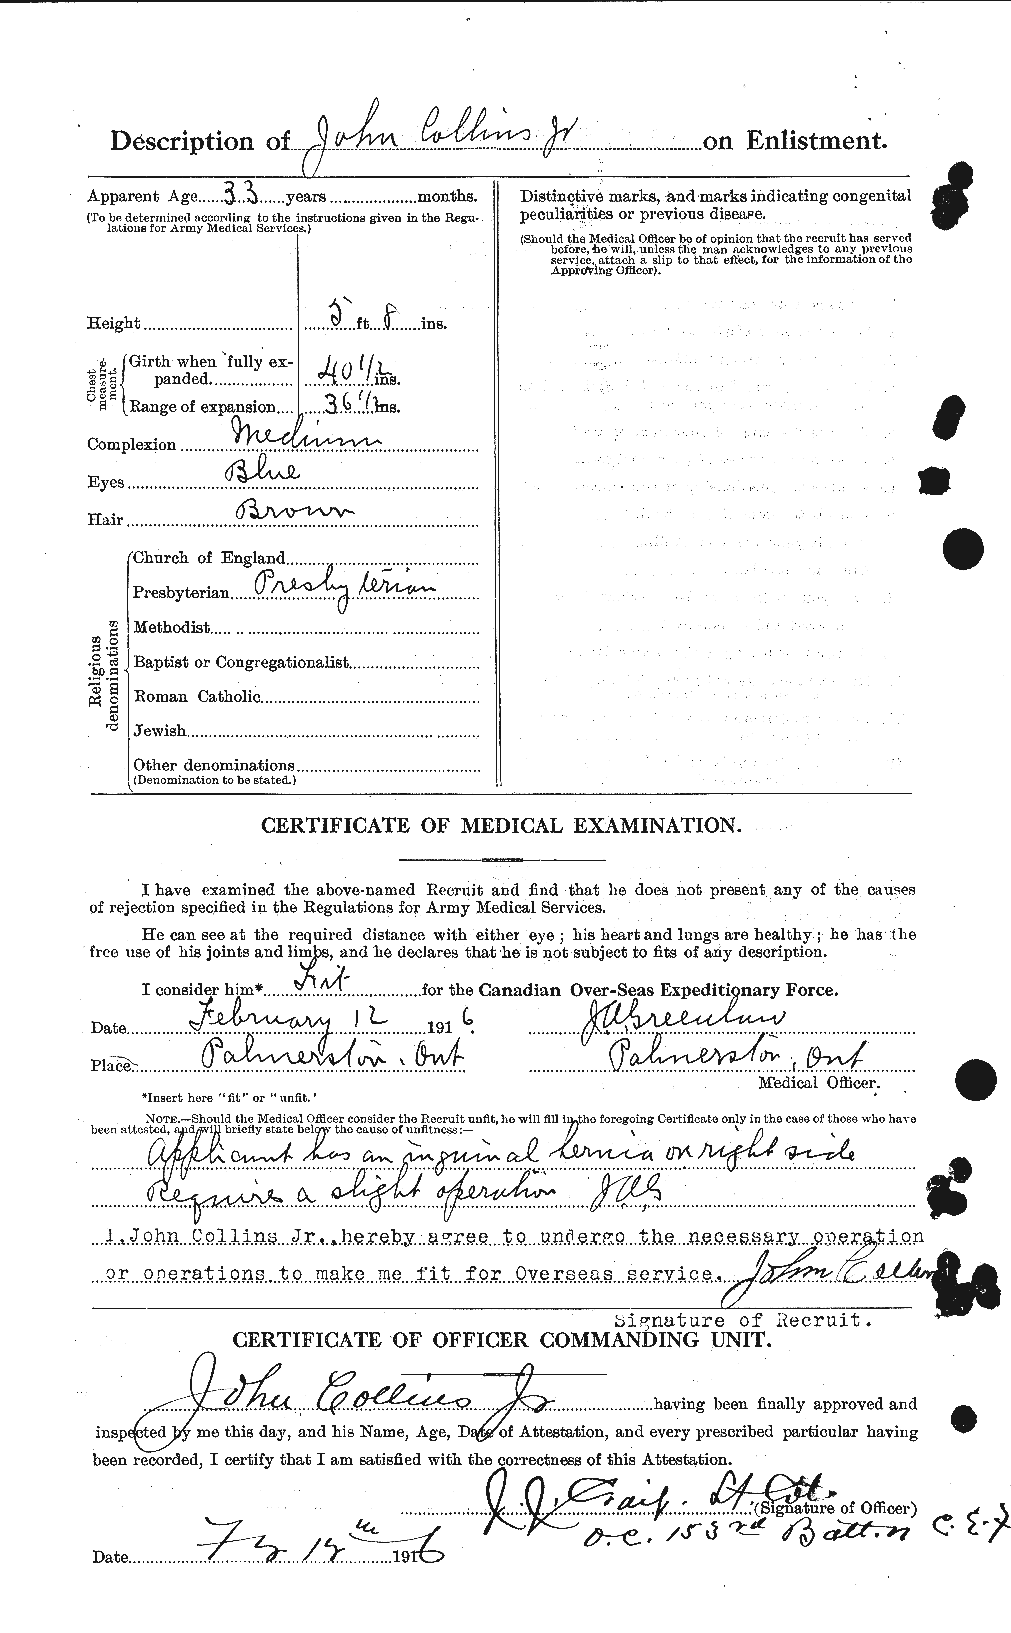 Dossiers du Personnel de la Première Guerre mondiale - CEC 069815b